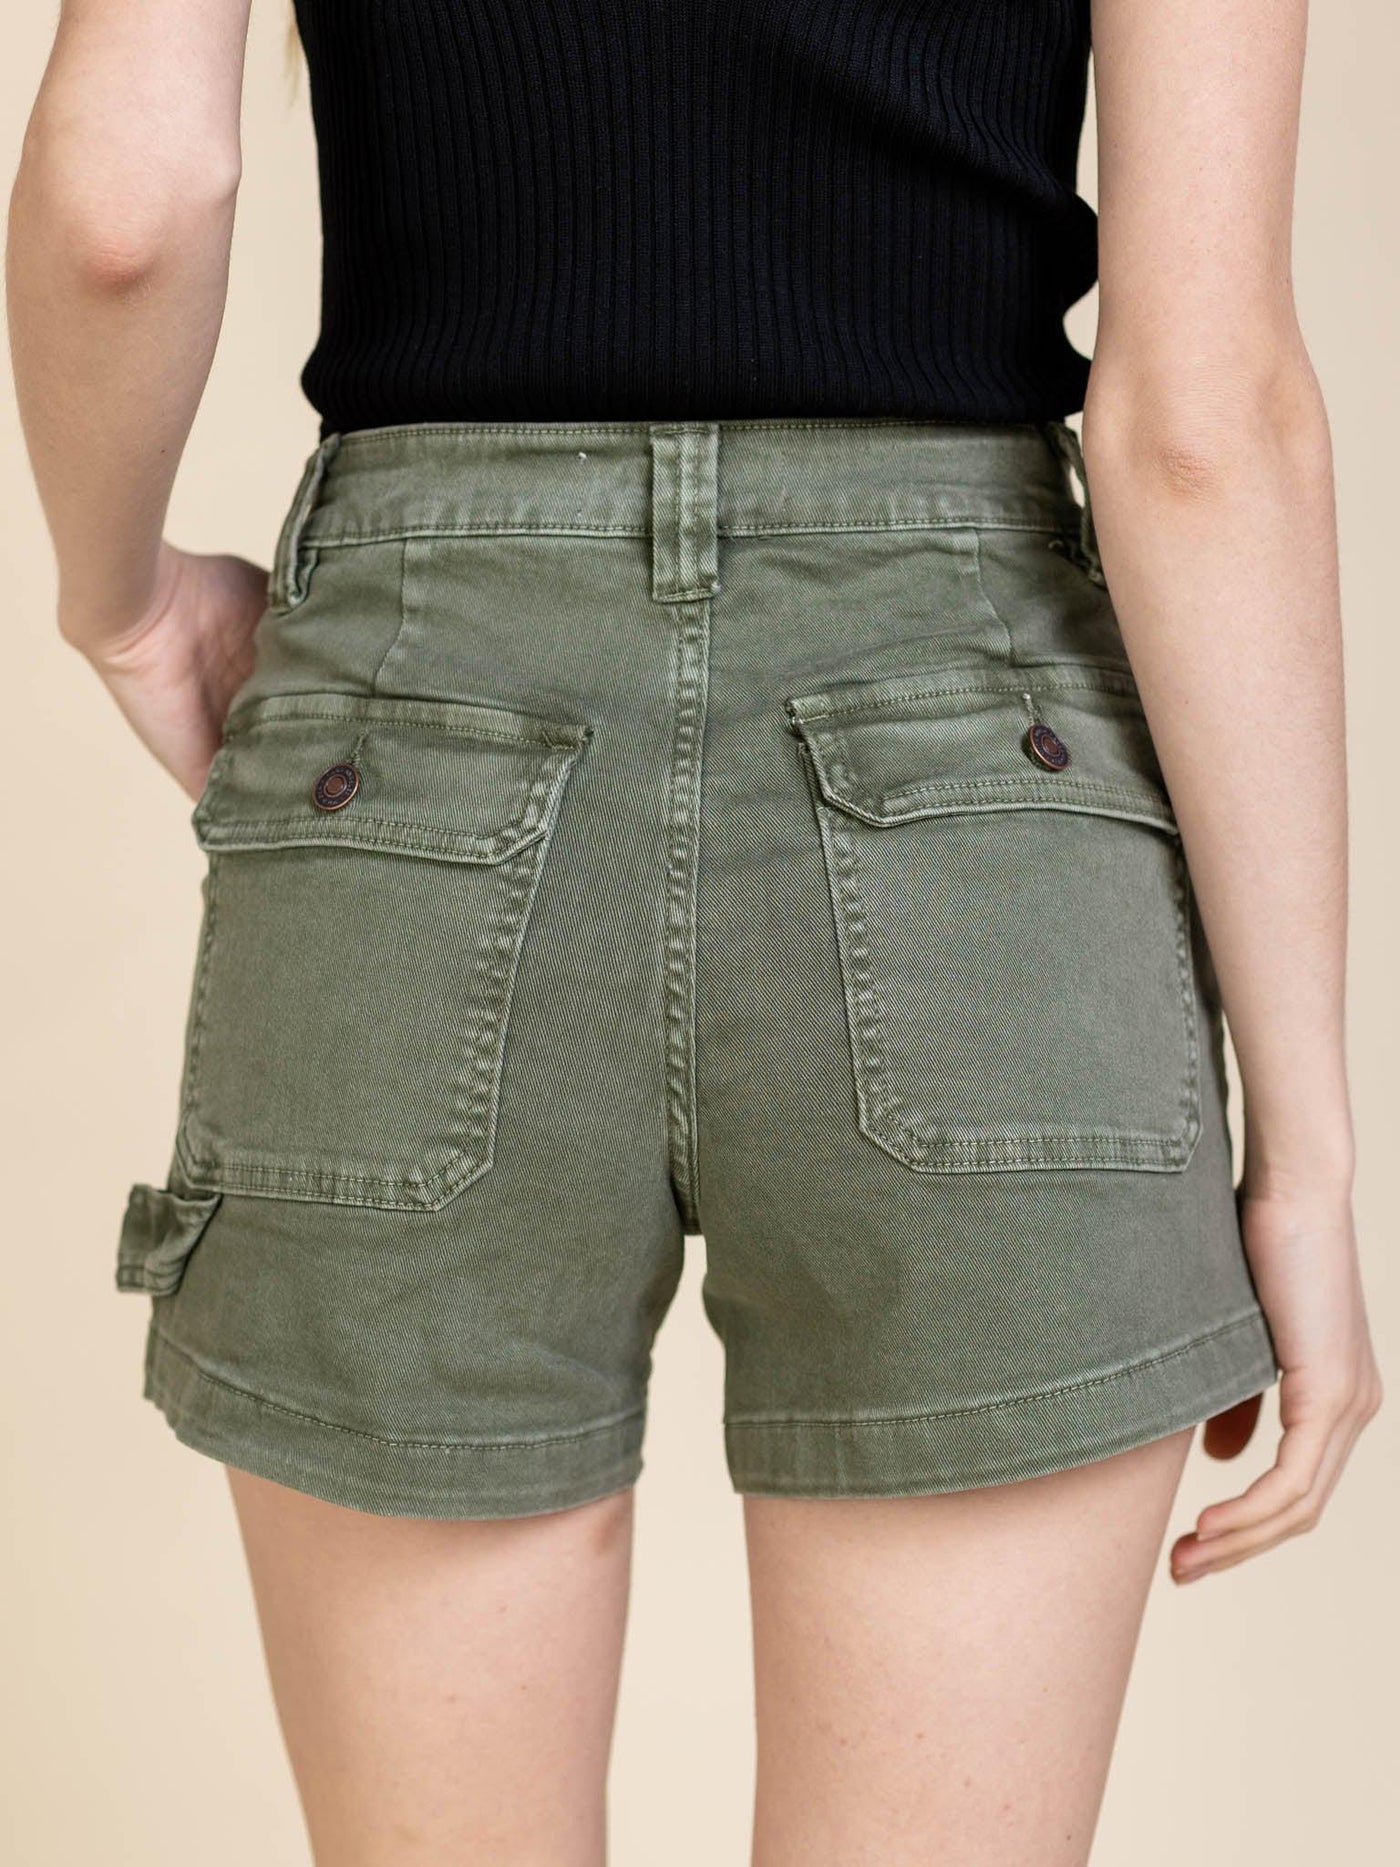 porkchop pocket shorts